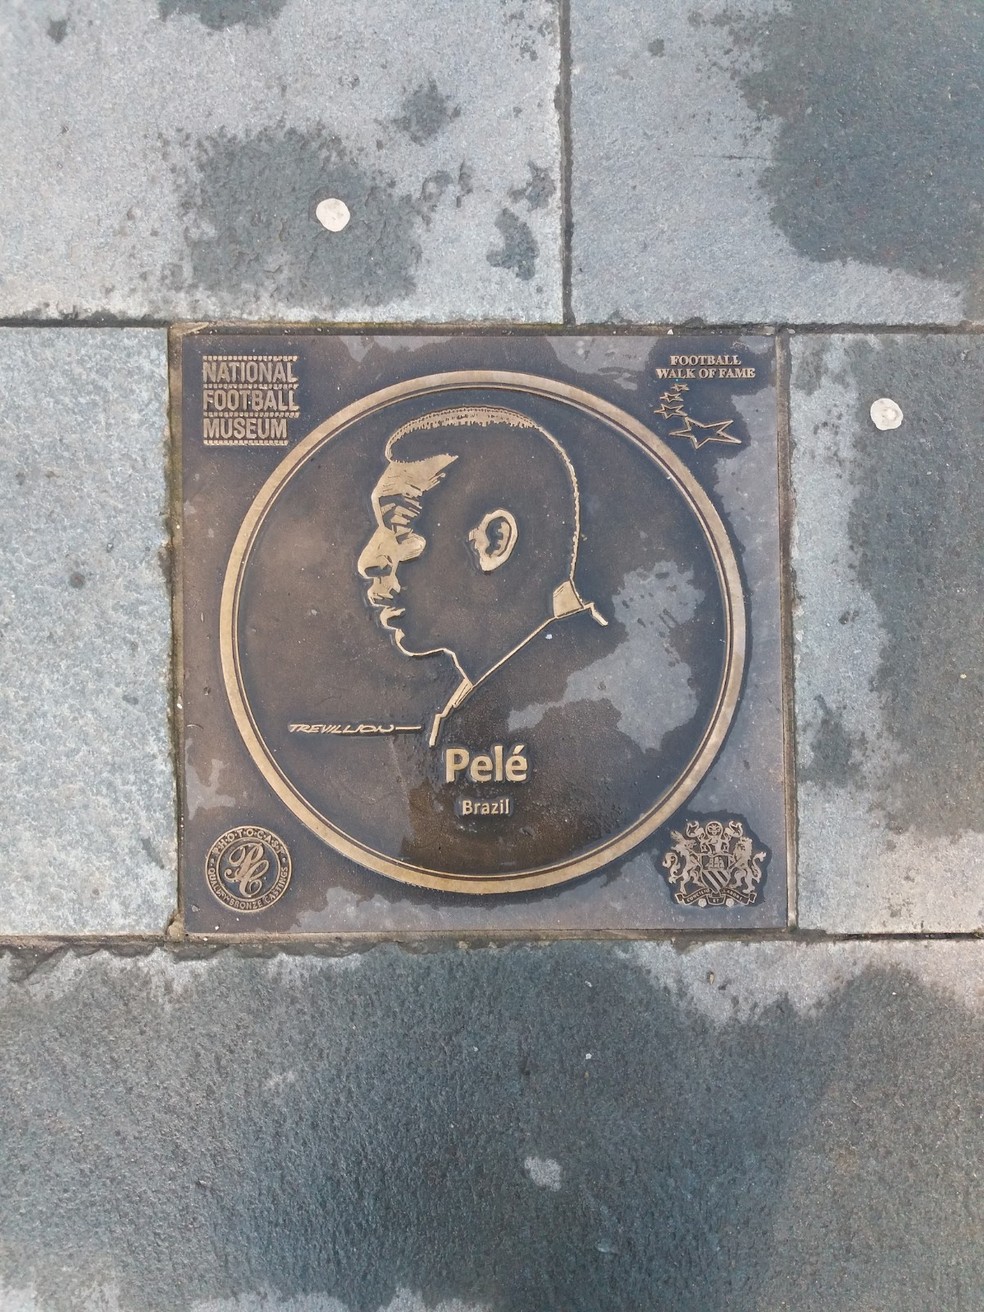 Imagem de Pelé na calçada da fama do National Football Museum, em Manchester, na Inglaterra — Foto: Eduardo Maia / O Globo